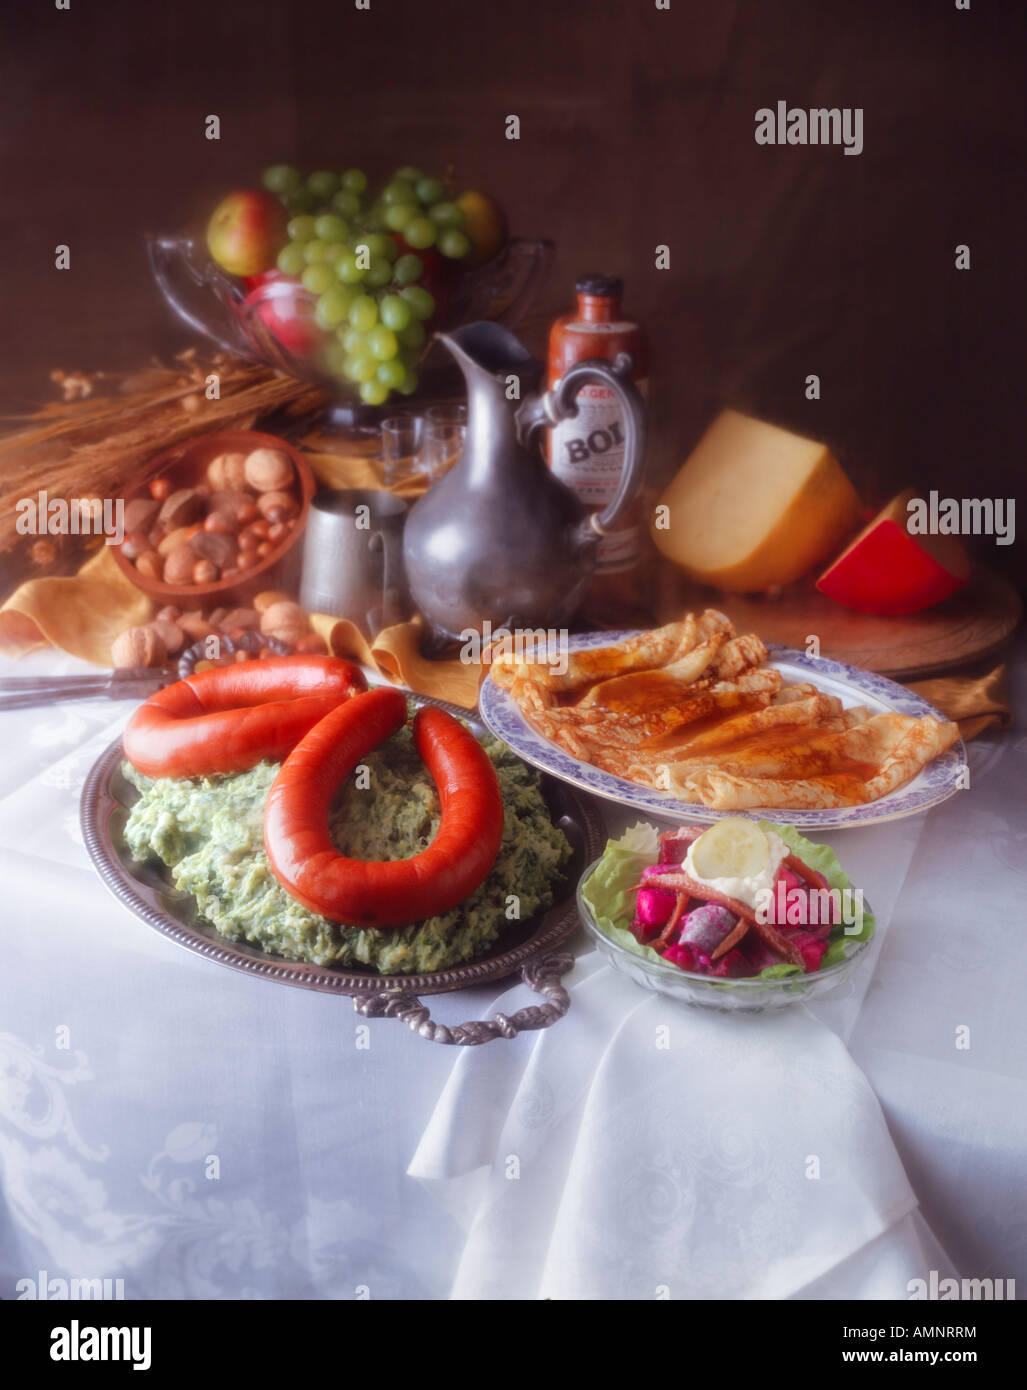 Tabelle der niederländischen Lebensmittel. Franjfurt auf Kohl-Brei mit Pfannkuchen in Sirup. Holländischen Käse und Obst & Muttern. Schoss wie eine holländische Malerei Stockfoto